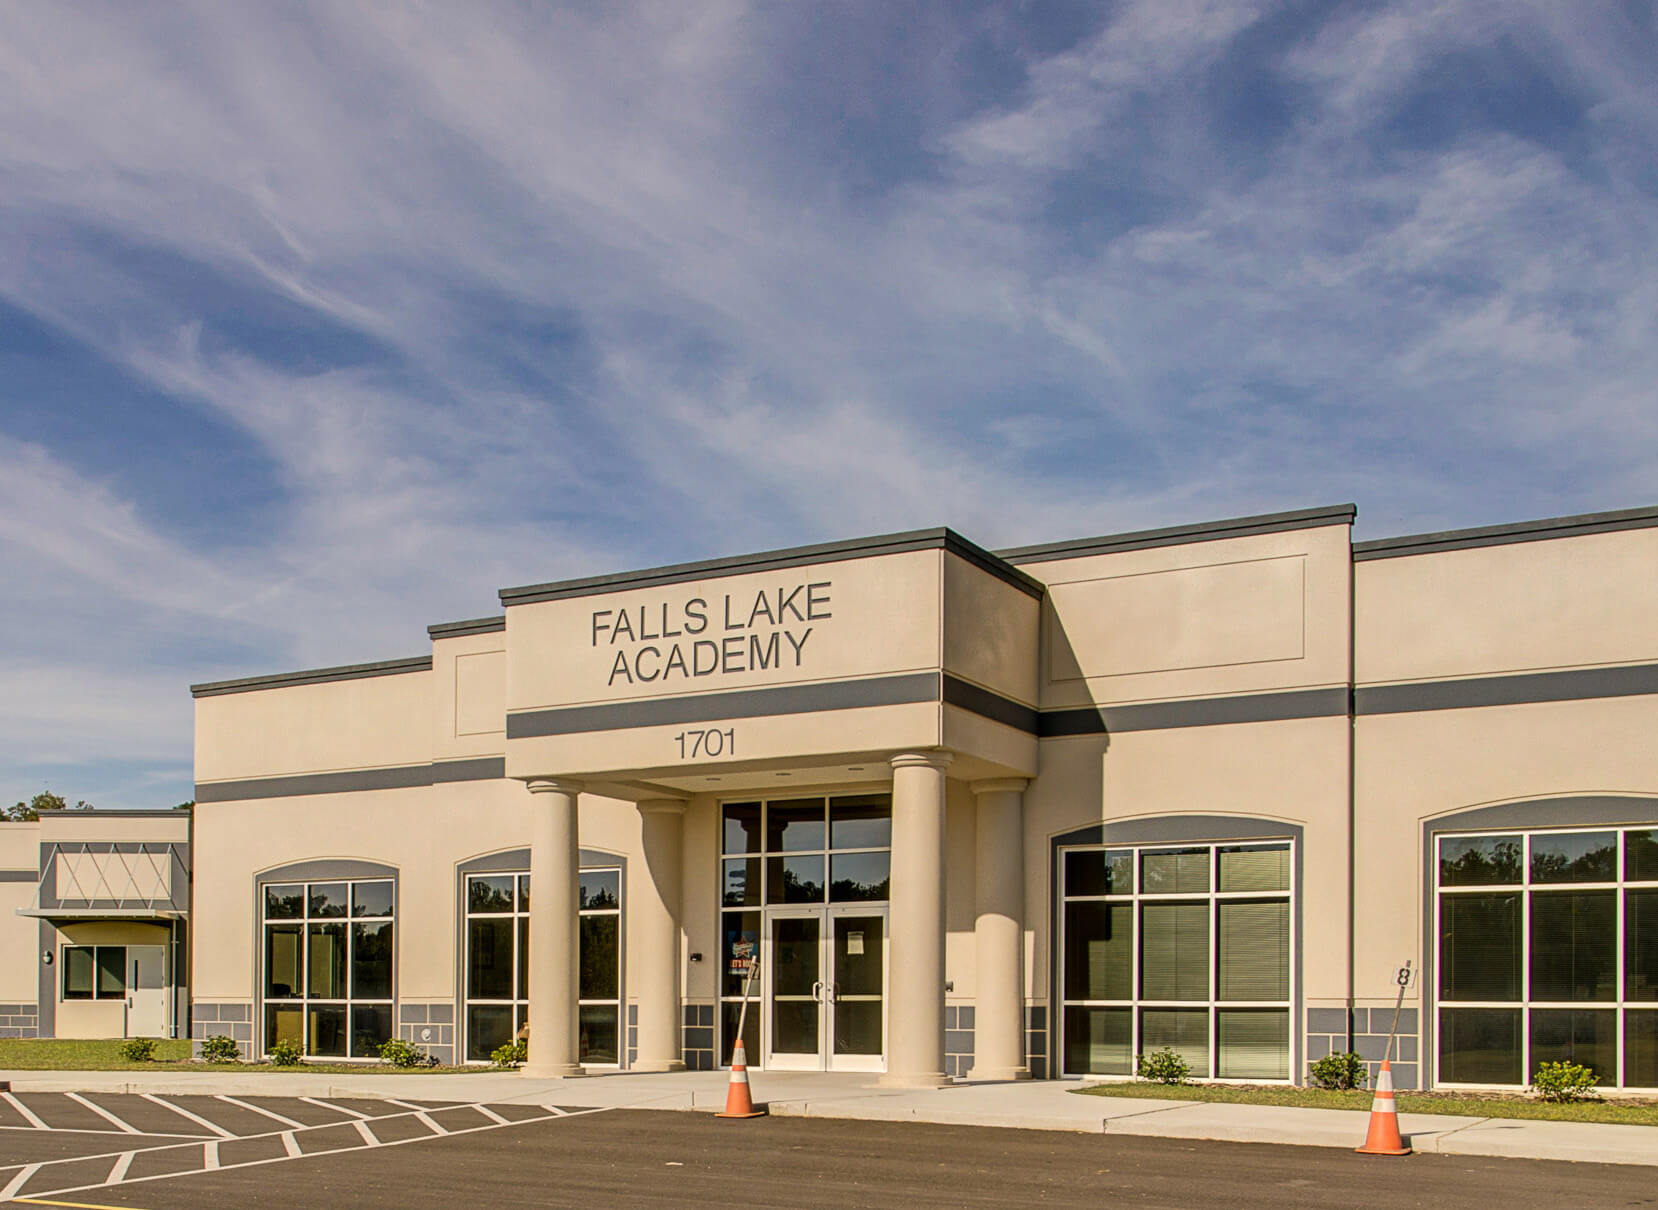 Falls Lake Academy